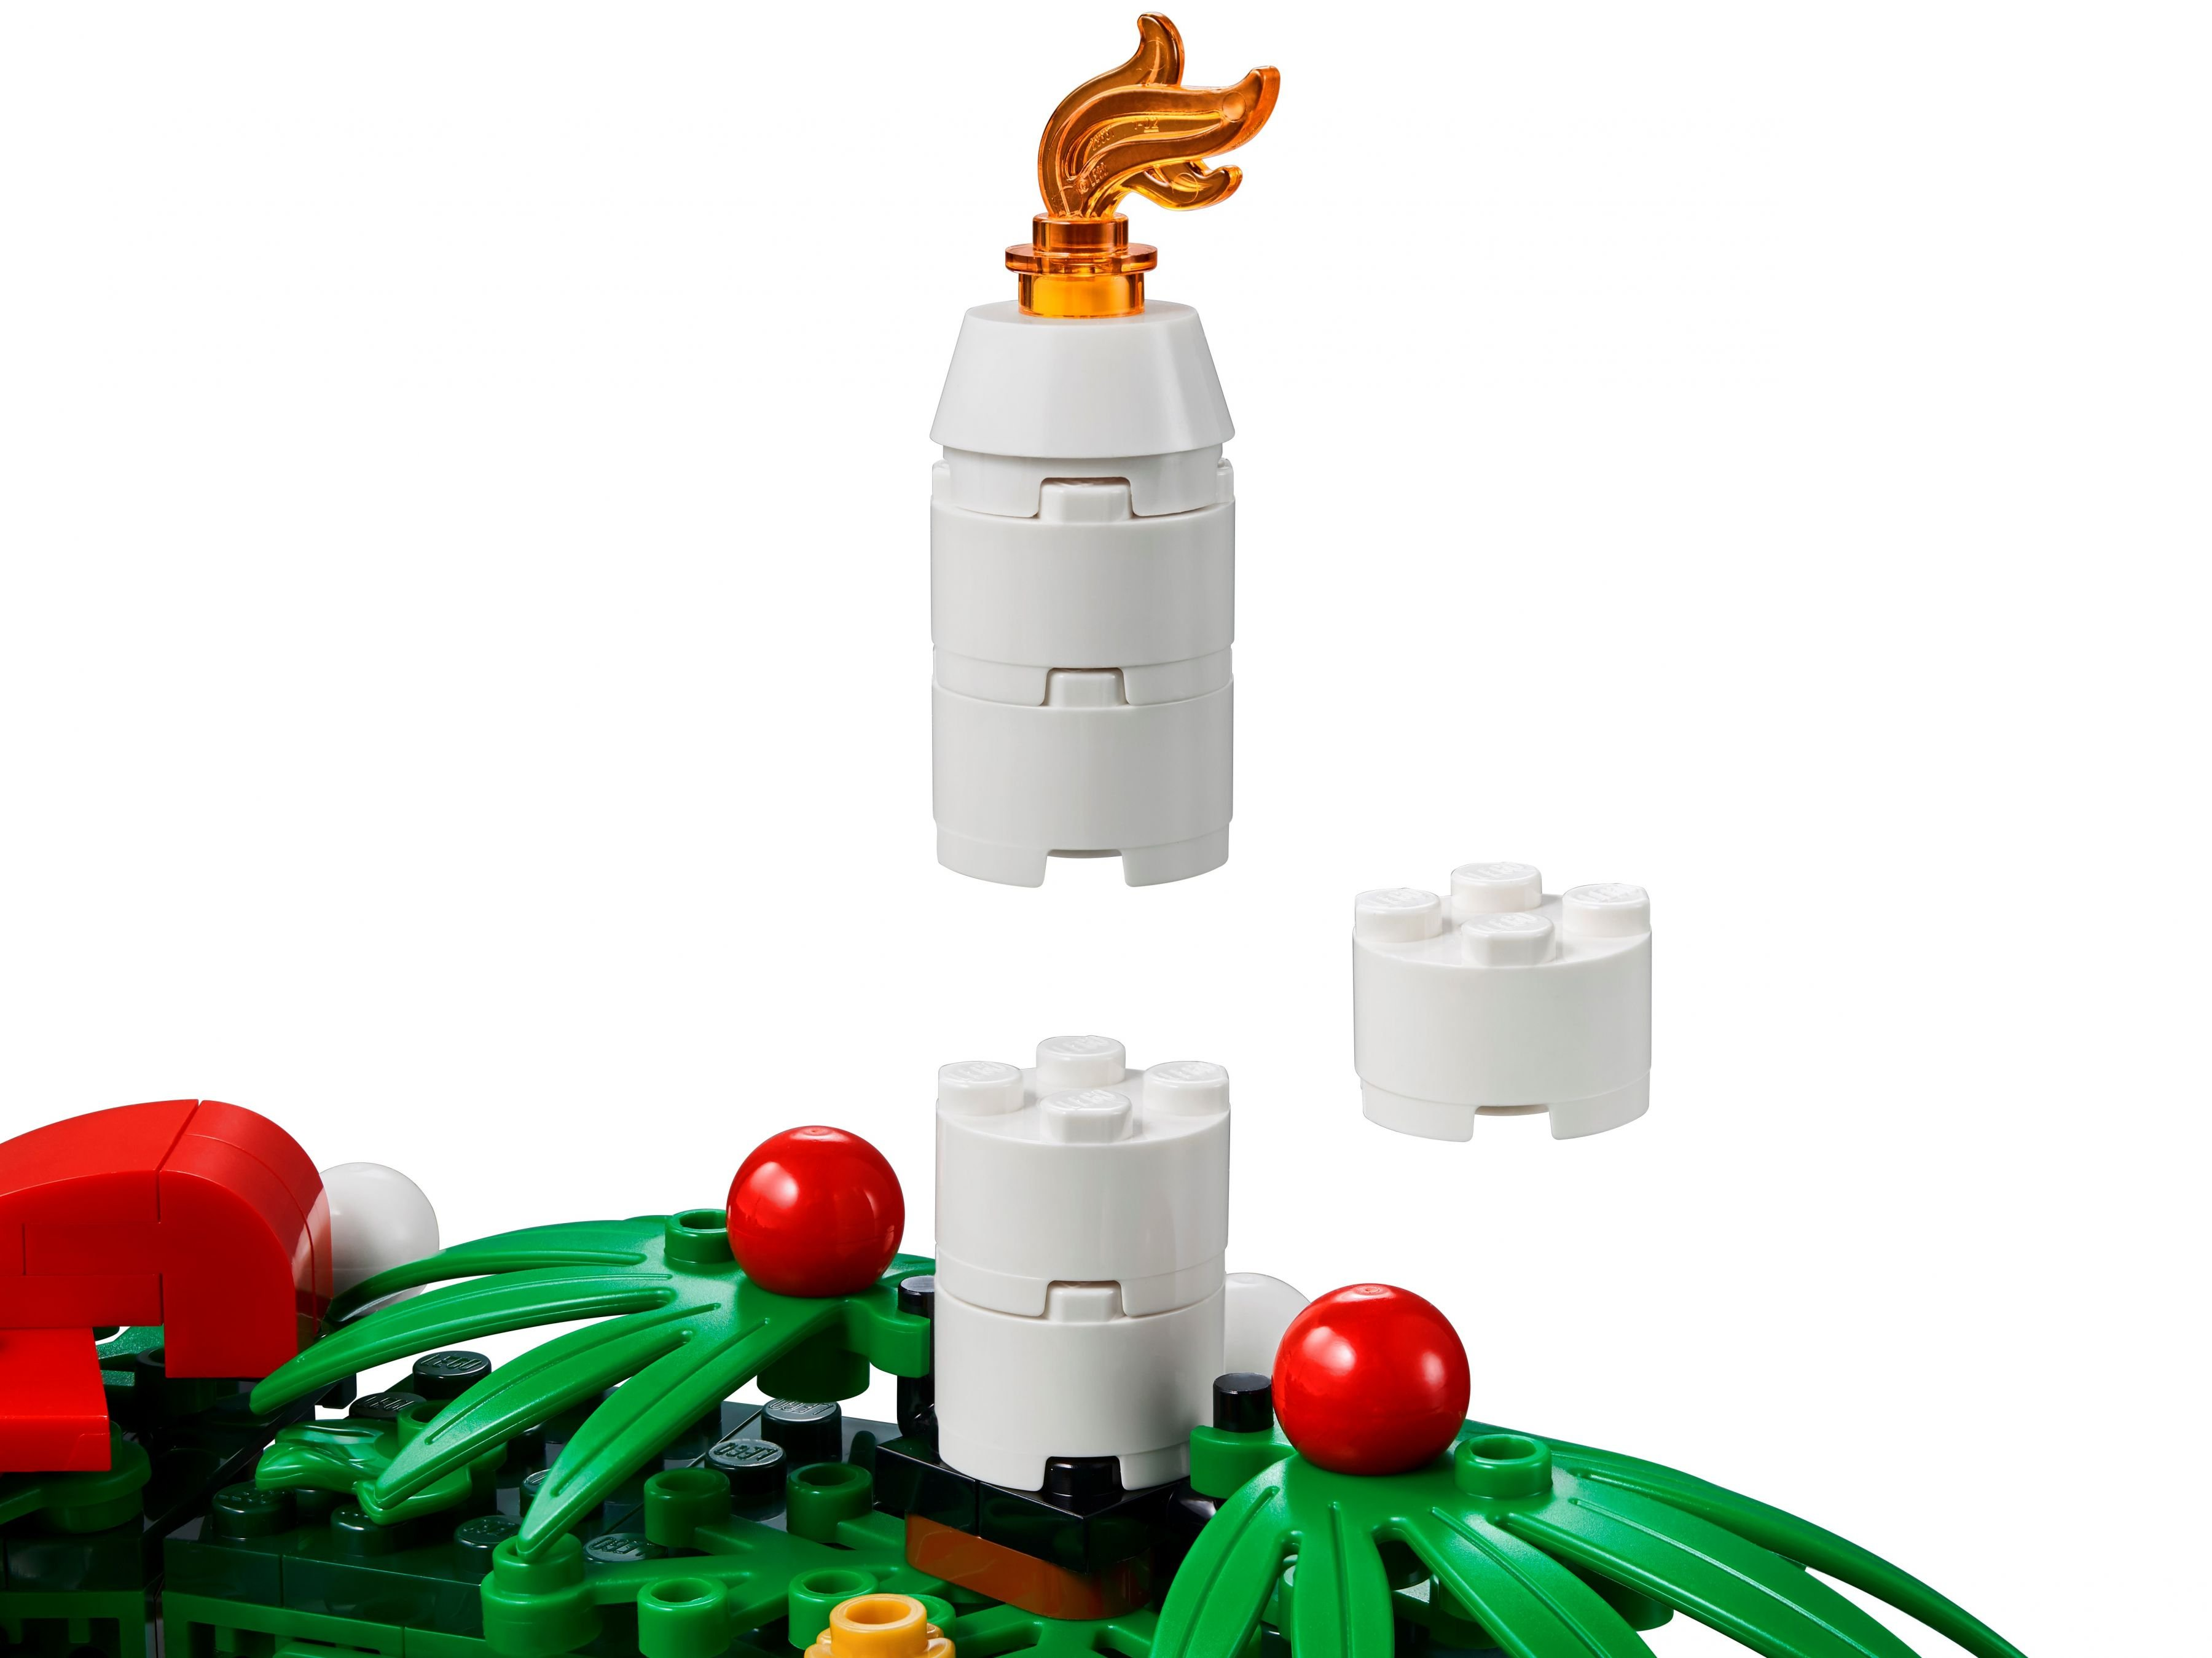 Adventskranz 2in1 / Bausatz 40426 Türkranz LEGO